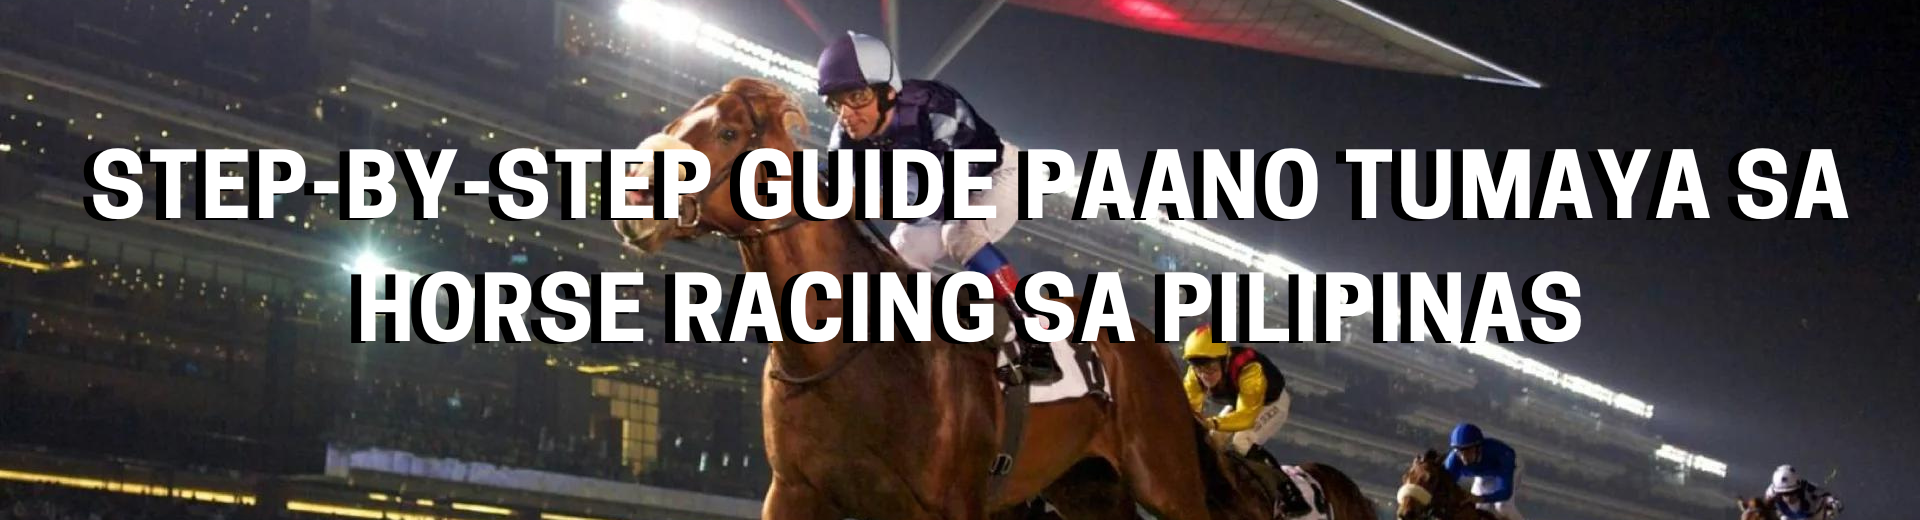 Step-by-Step Guide Paano Tumaya sa Horse Racing sa Pilipinas | OKBet